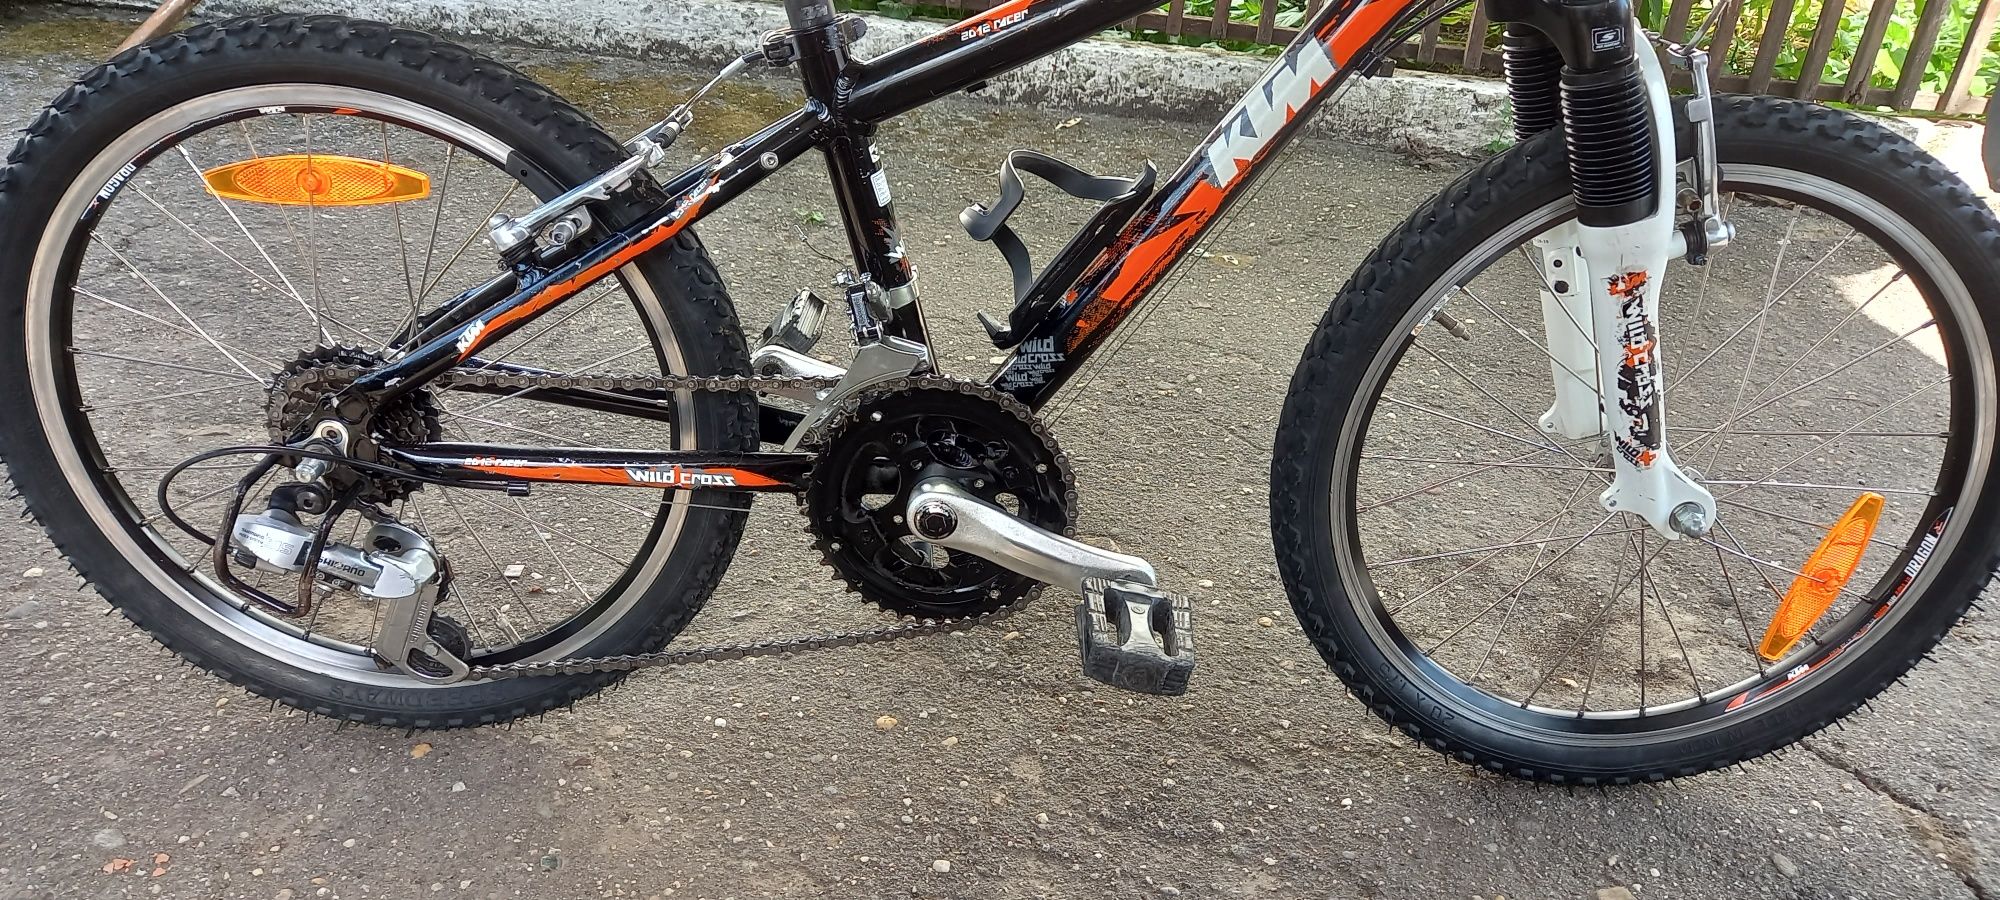 Bicicleta copii KTM WILD CROSS 20 inch